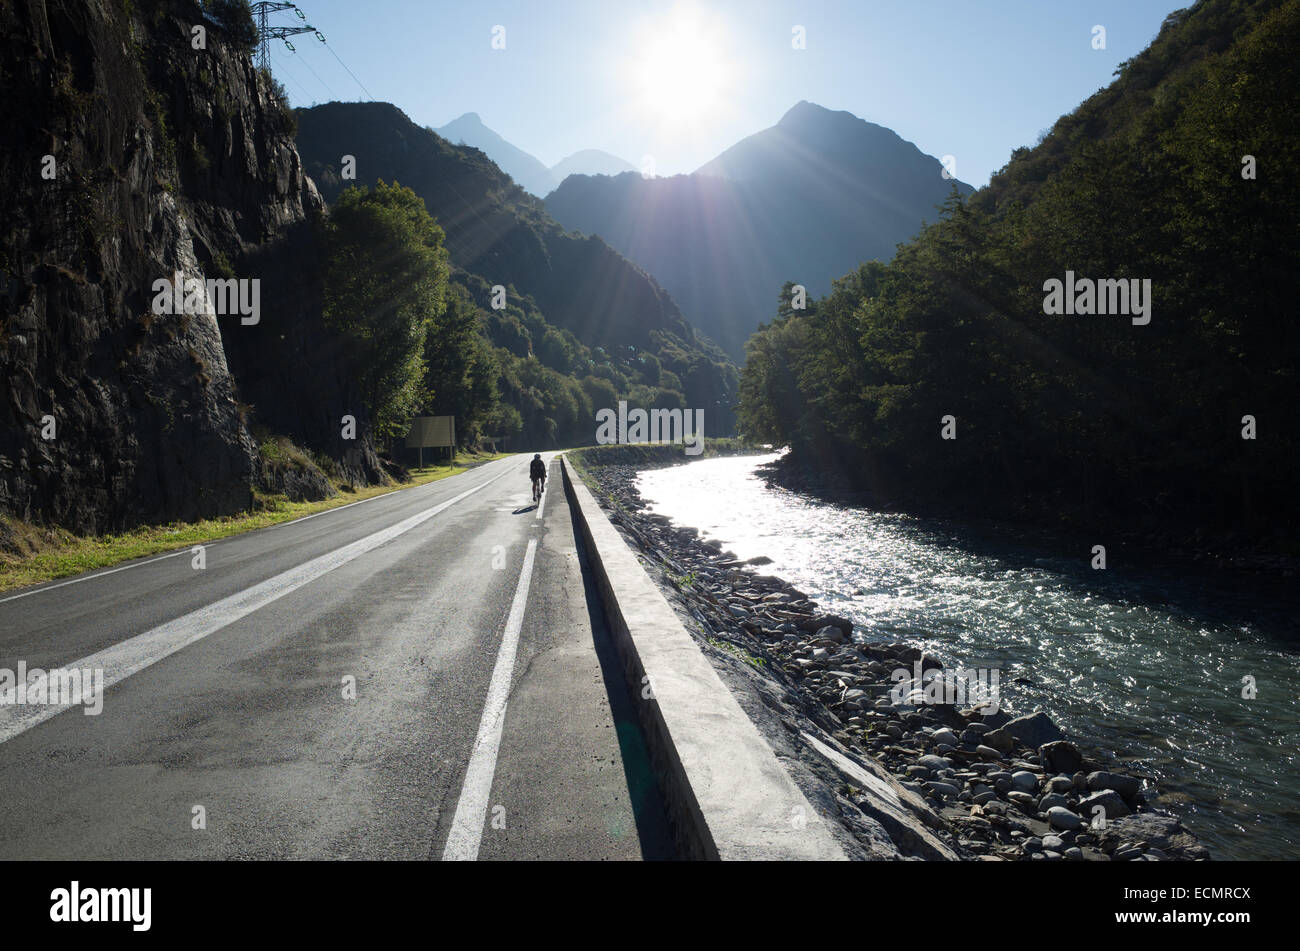 Cycliste solitaire dans le soleil d'équitation sur une route vide à côté d'une rivière avec montagnes Pyreneean imminente dans l'arrière-plan Banque D'Images